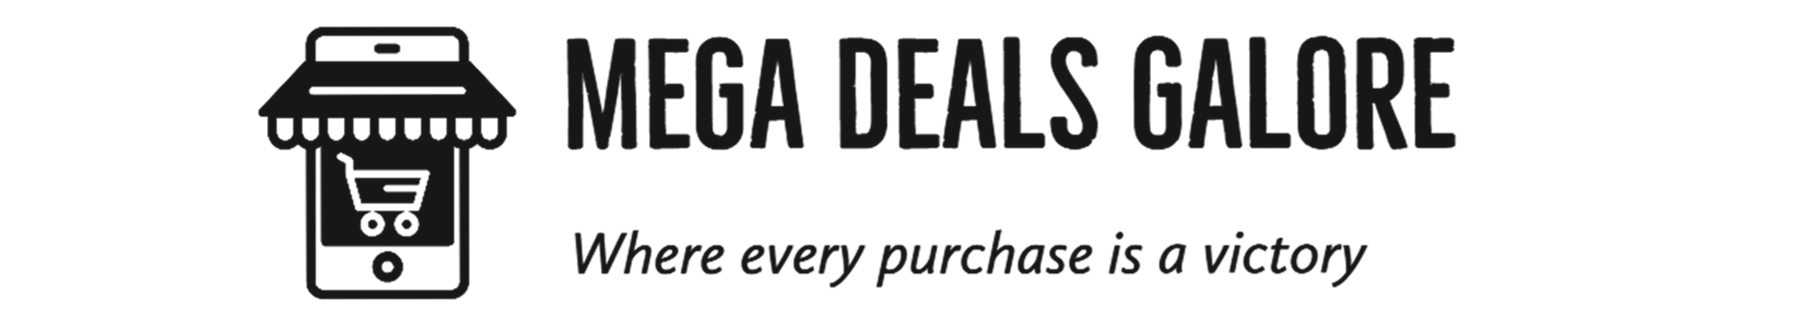 Mega Deals Galore